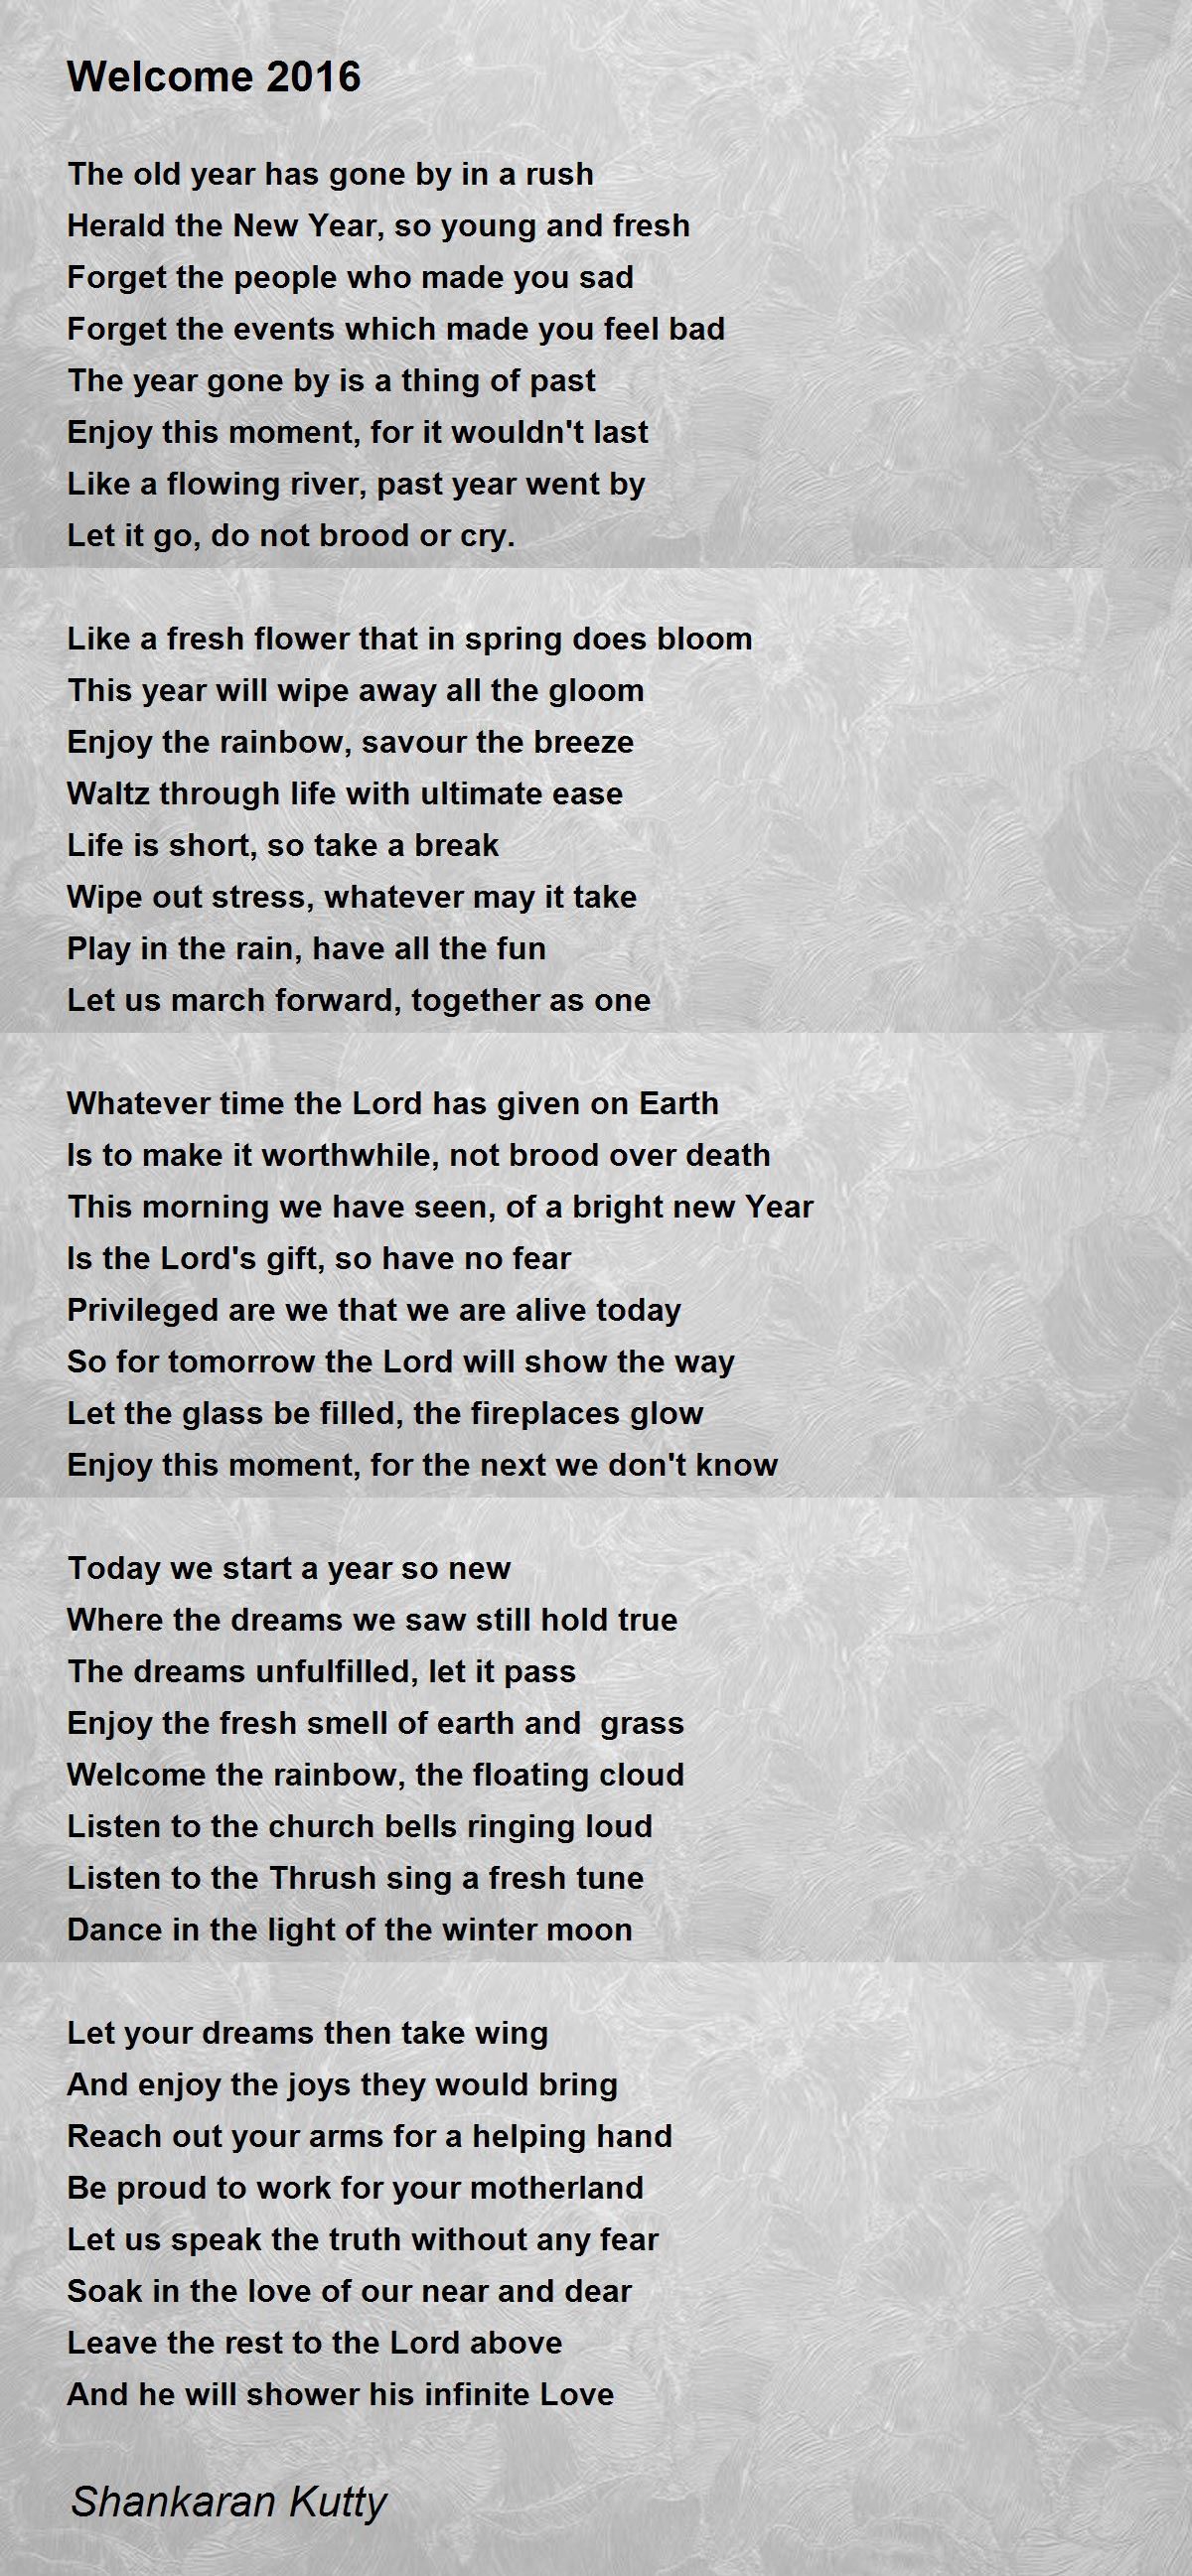 My Kingdom - My Kingdom Poem by Shankaran Kutty